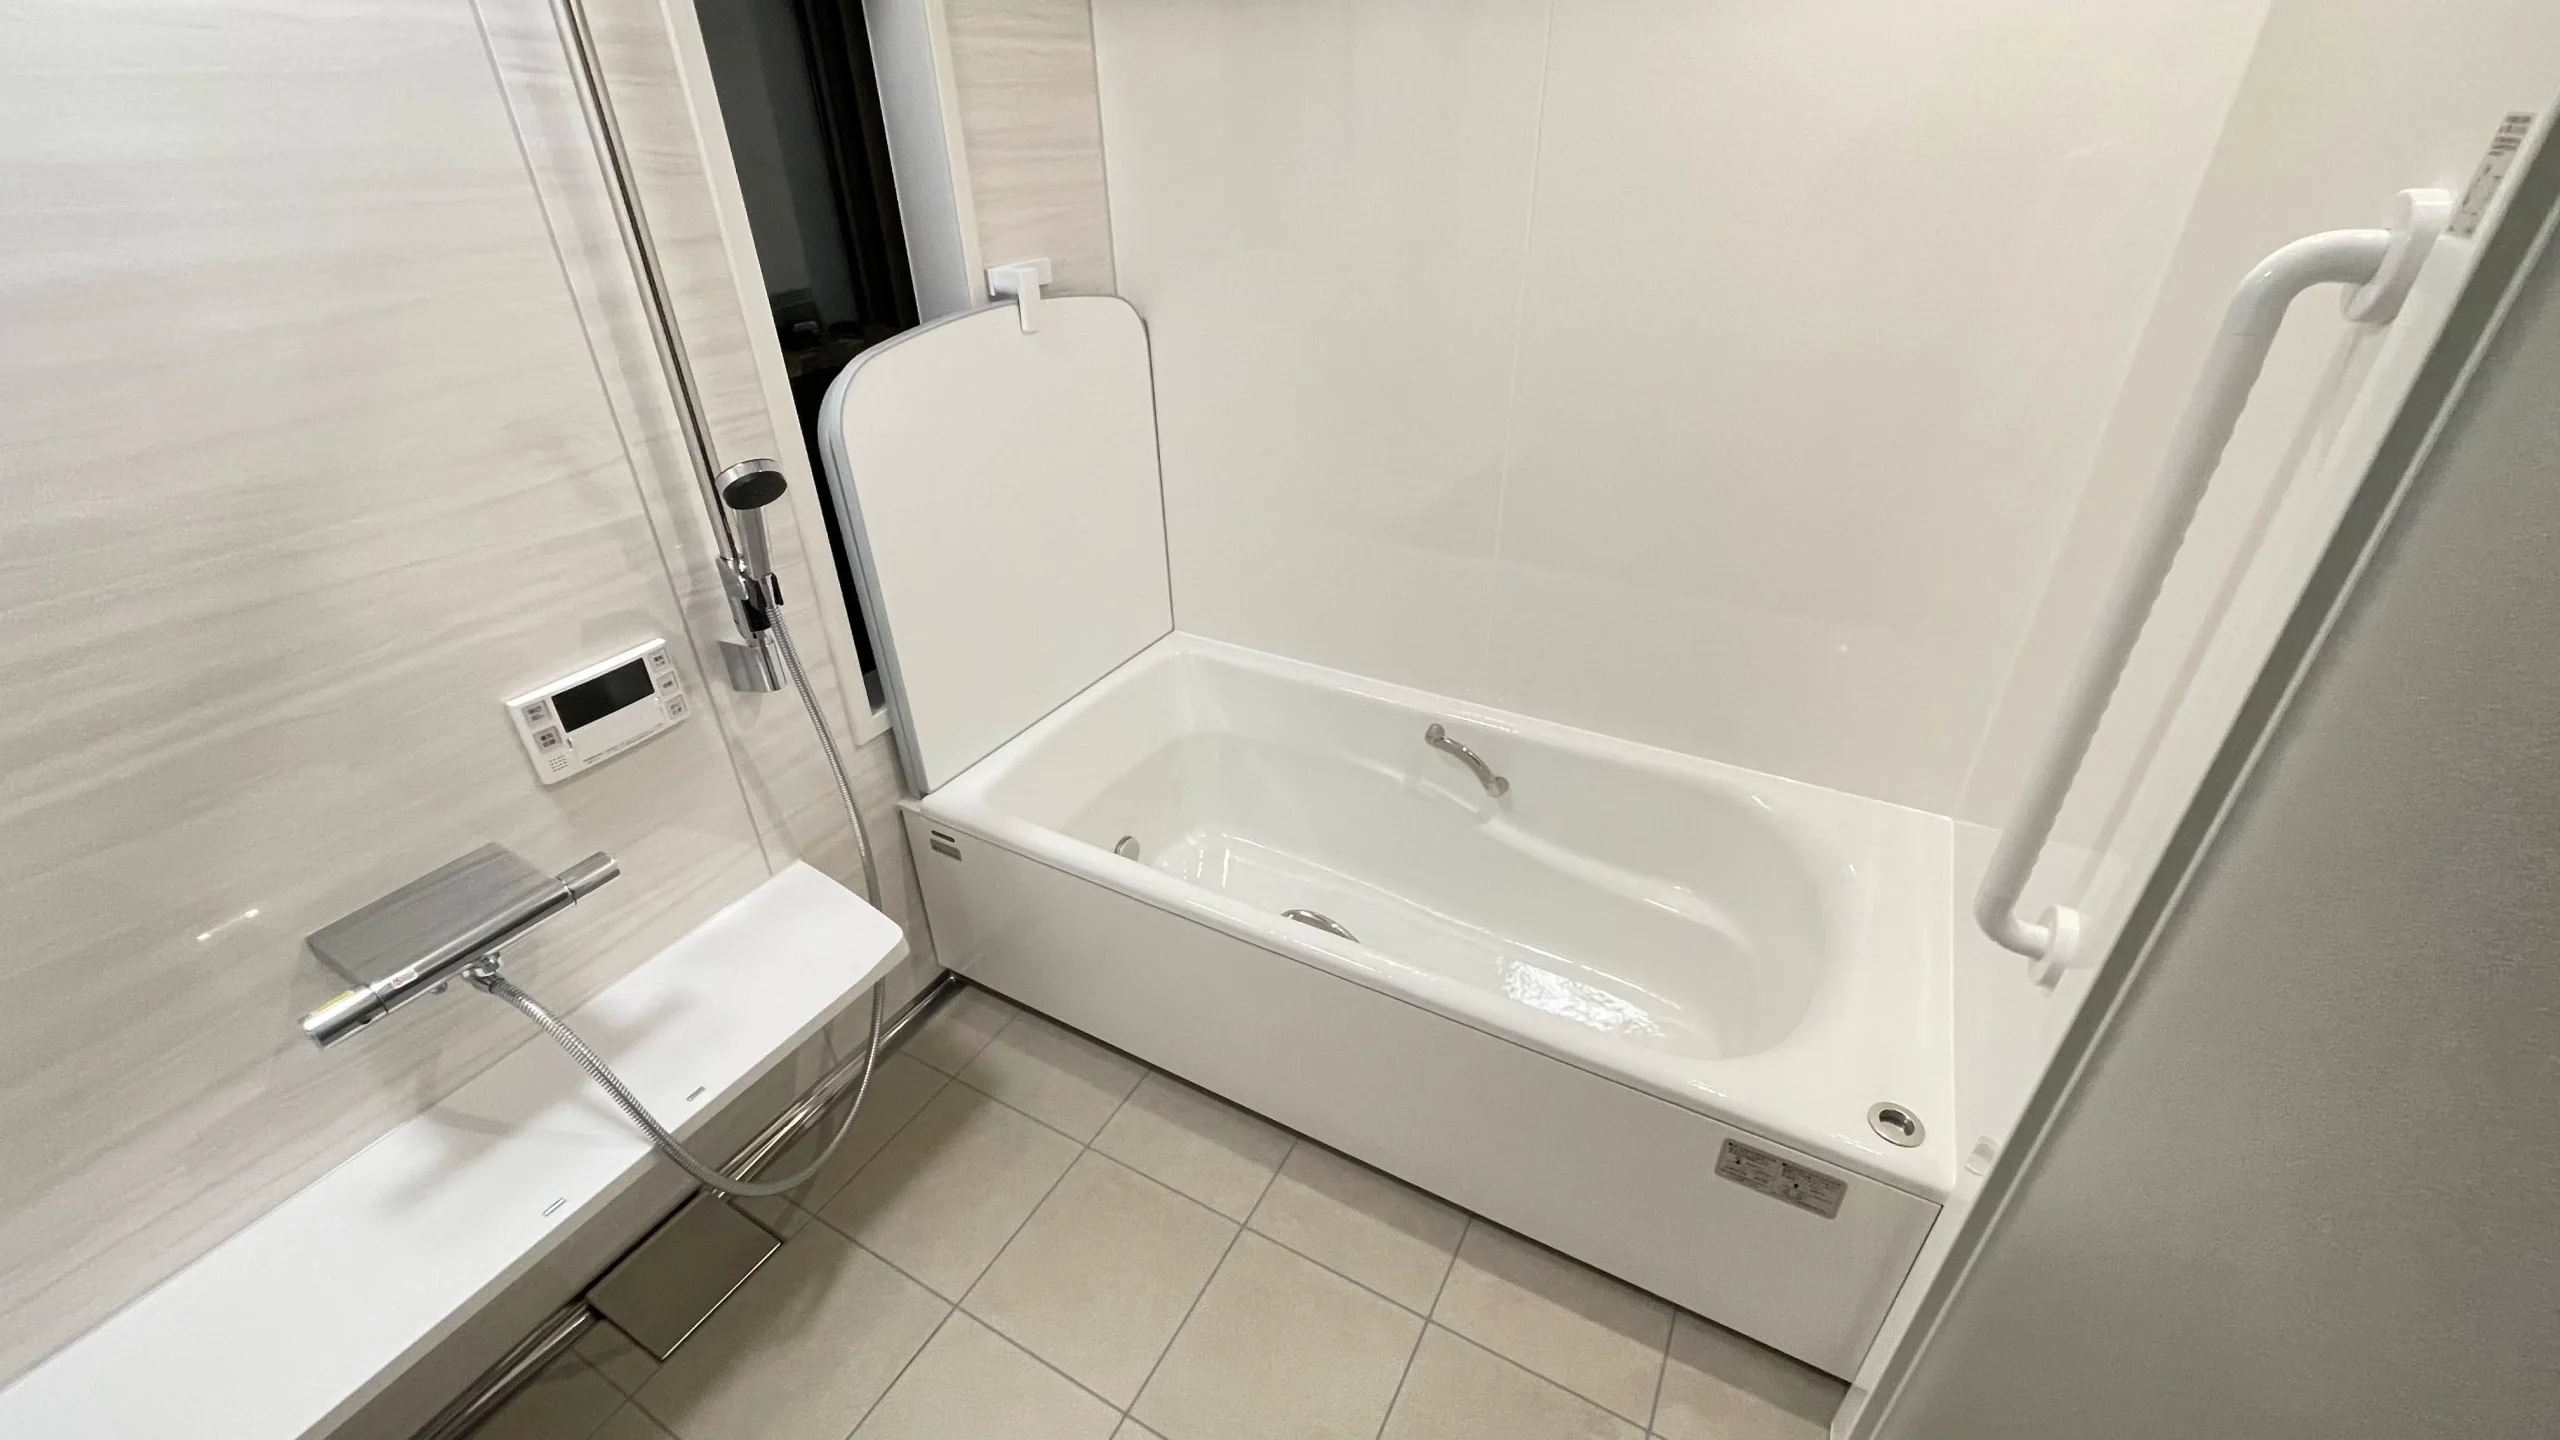 タカラスタンダード浴室「プレデンシア」TOTO洗面「オクターブ」のリフォーム事例